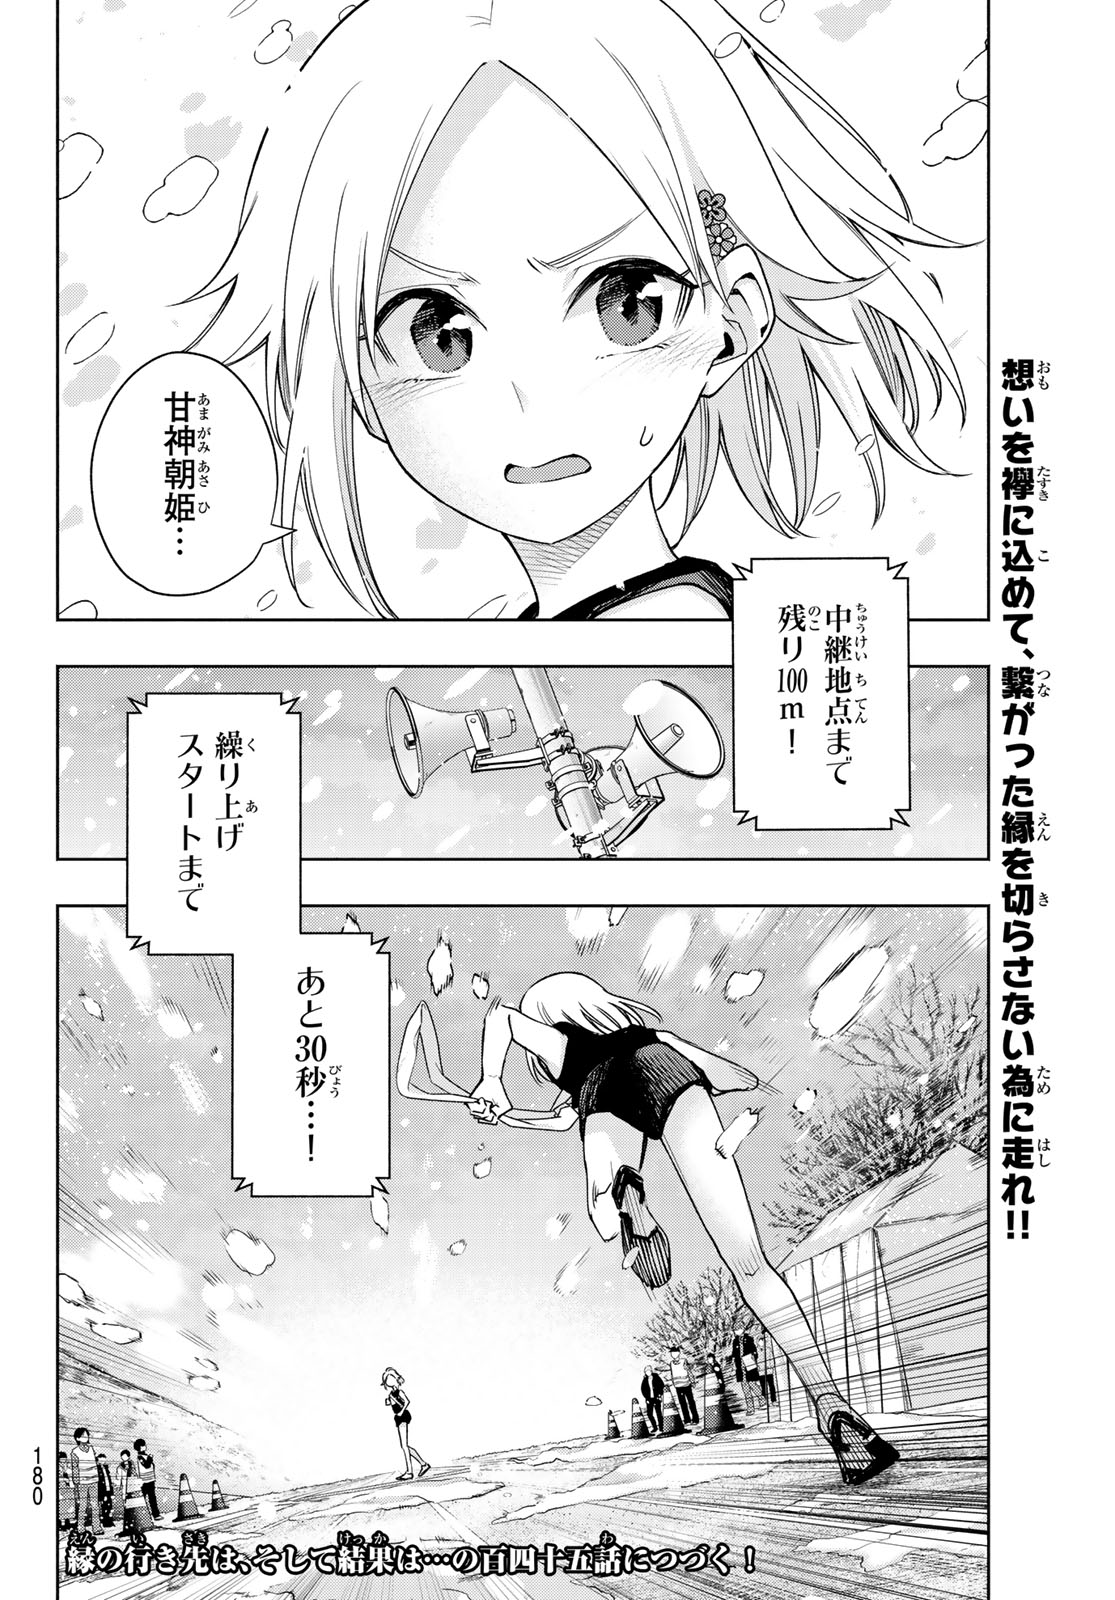 Amagami-san Chi no Enmusubi - Chapter 144 - Page 20